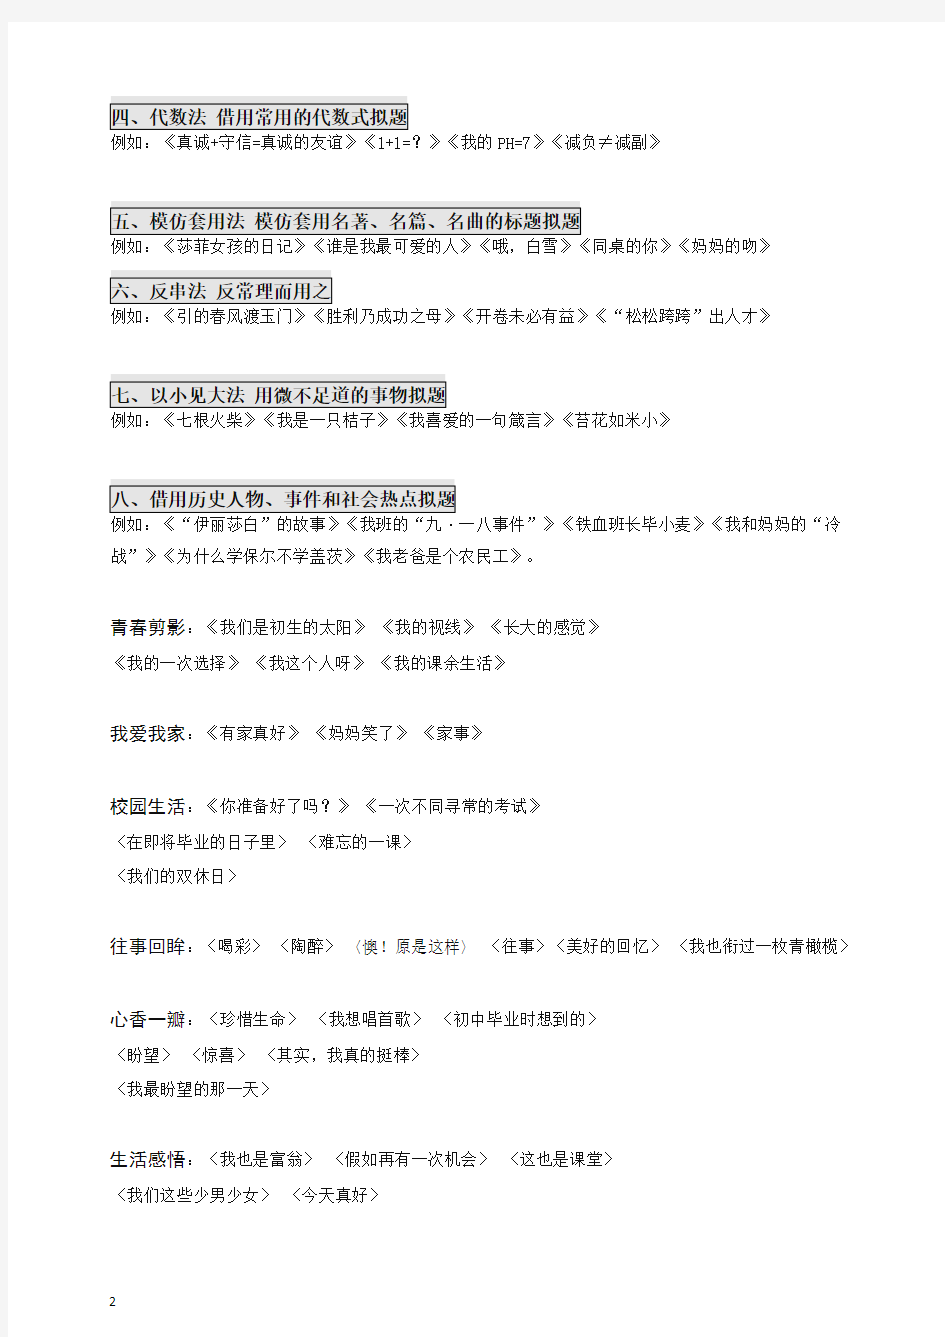 【备考2020】初中语文.作文课程.中考命题篇.半命题作文 拟题.教师版